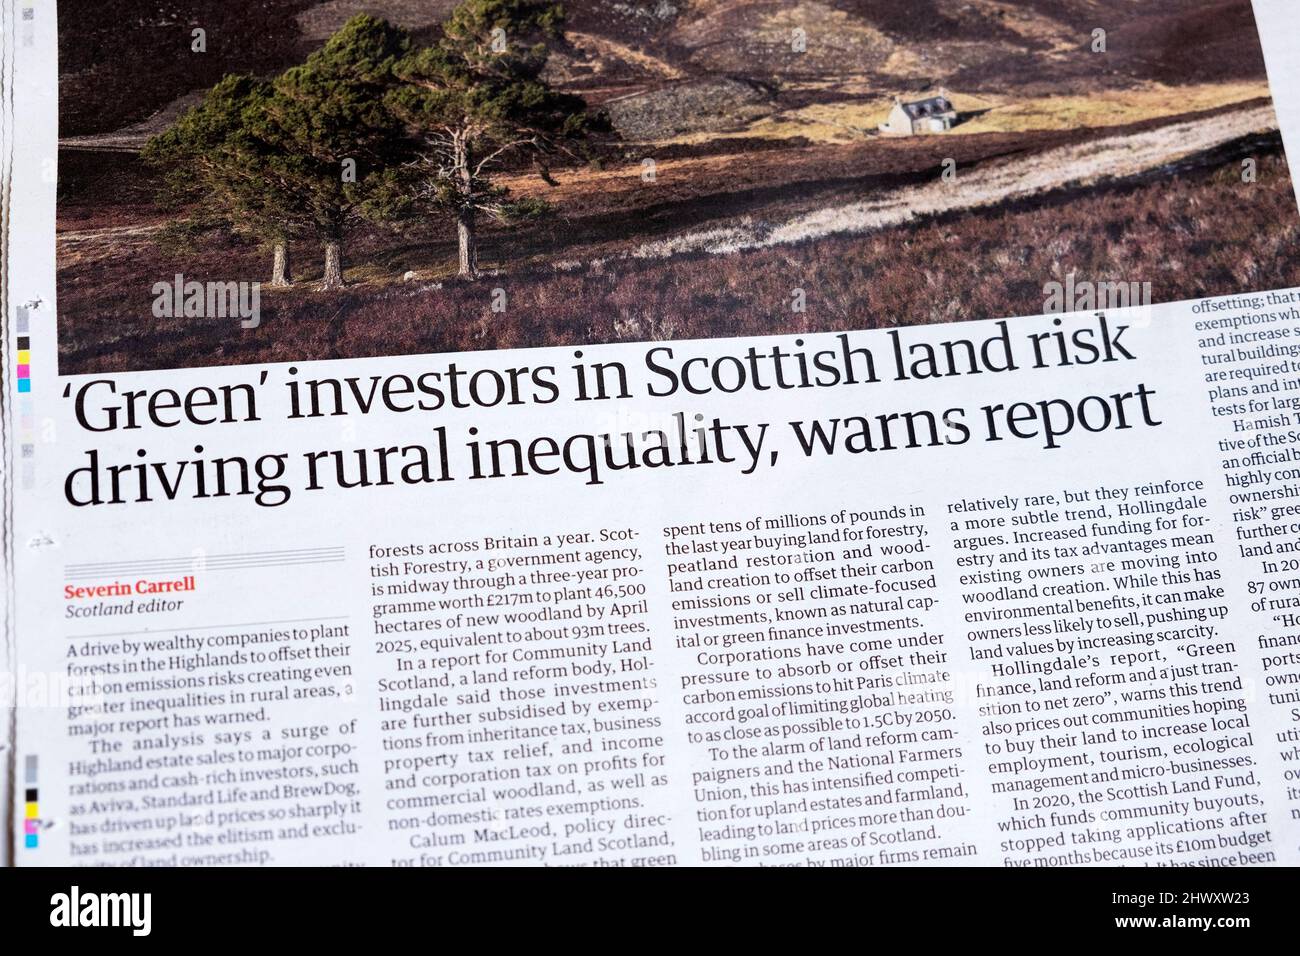 "Les investisseurs verts dans les terres écossaises risquent de conduire les inégalités rurales, avertit le rapport" le journal Environment Guardian a un titre clipping 5 mars 2022 Londres UK Banque D'Images